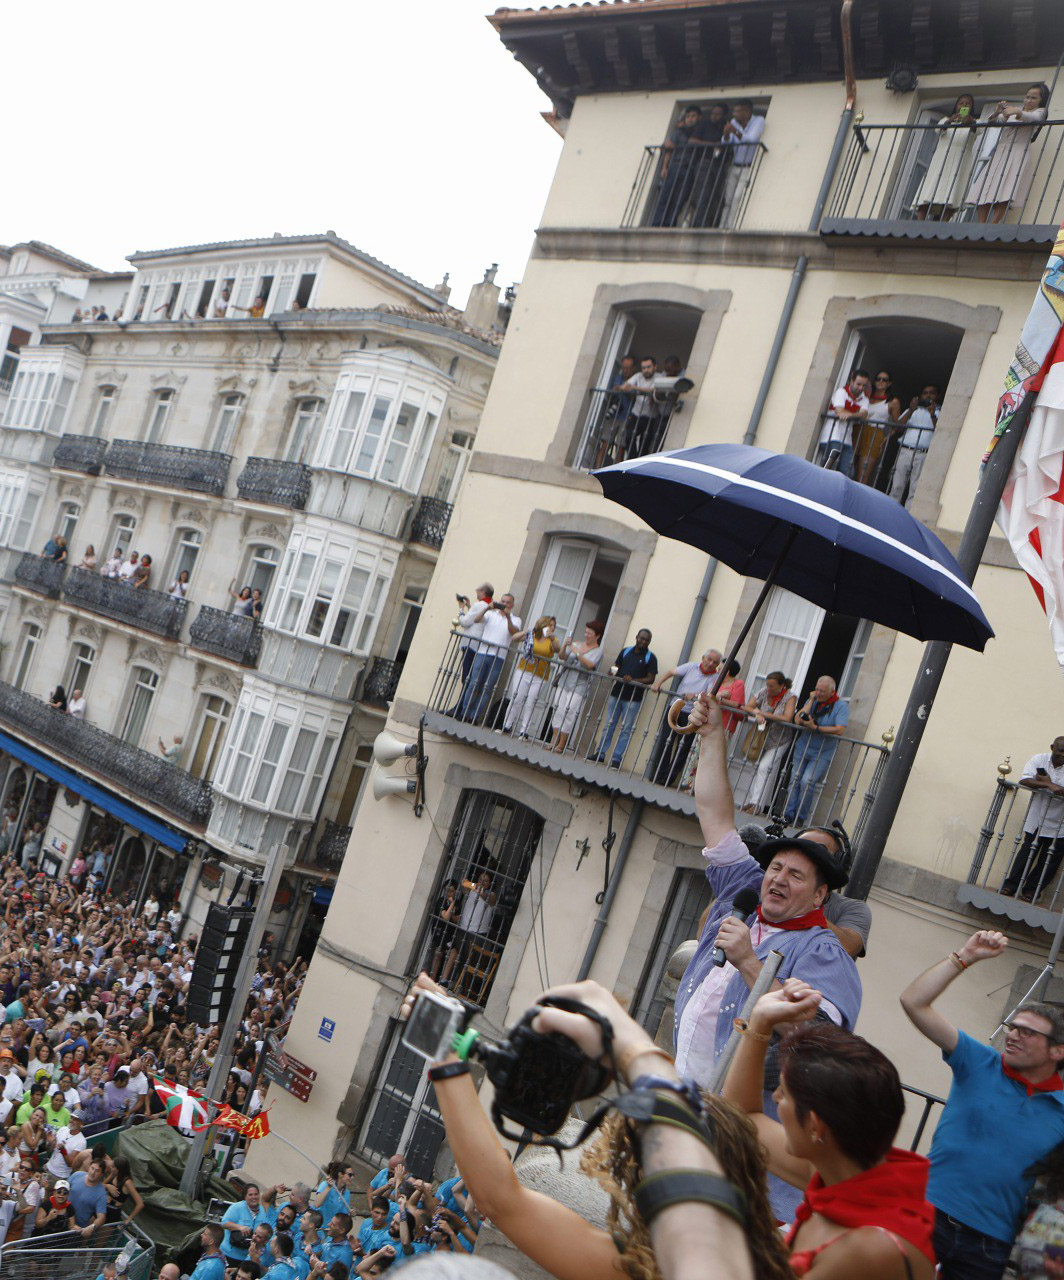 Las mejores fiestas de Vitoria desde [inserta tu fecha] - Gasteiz Hoy